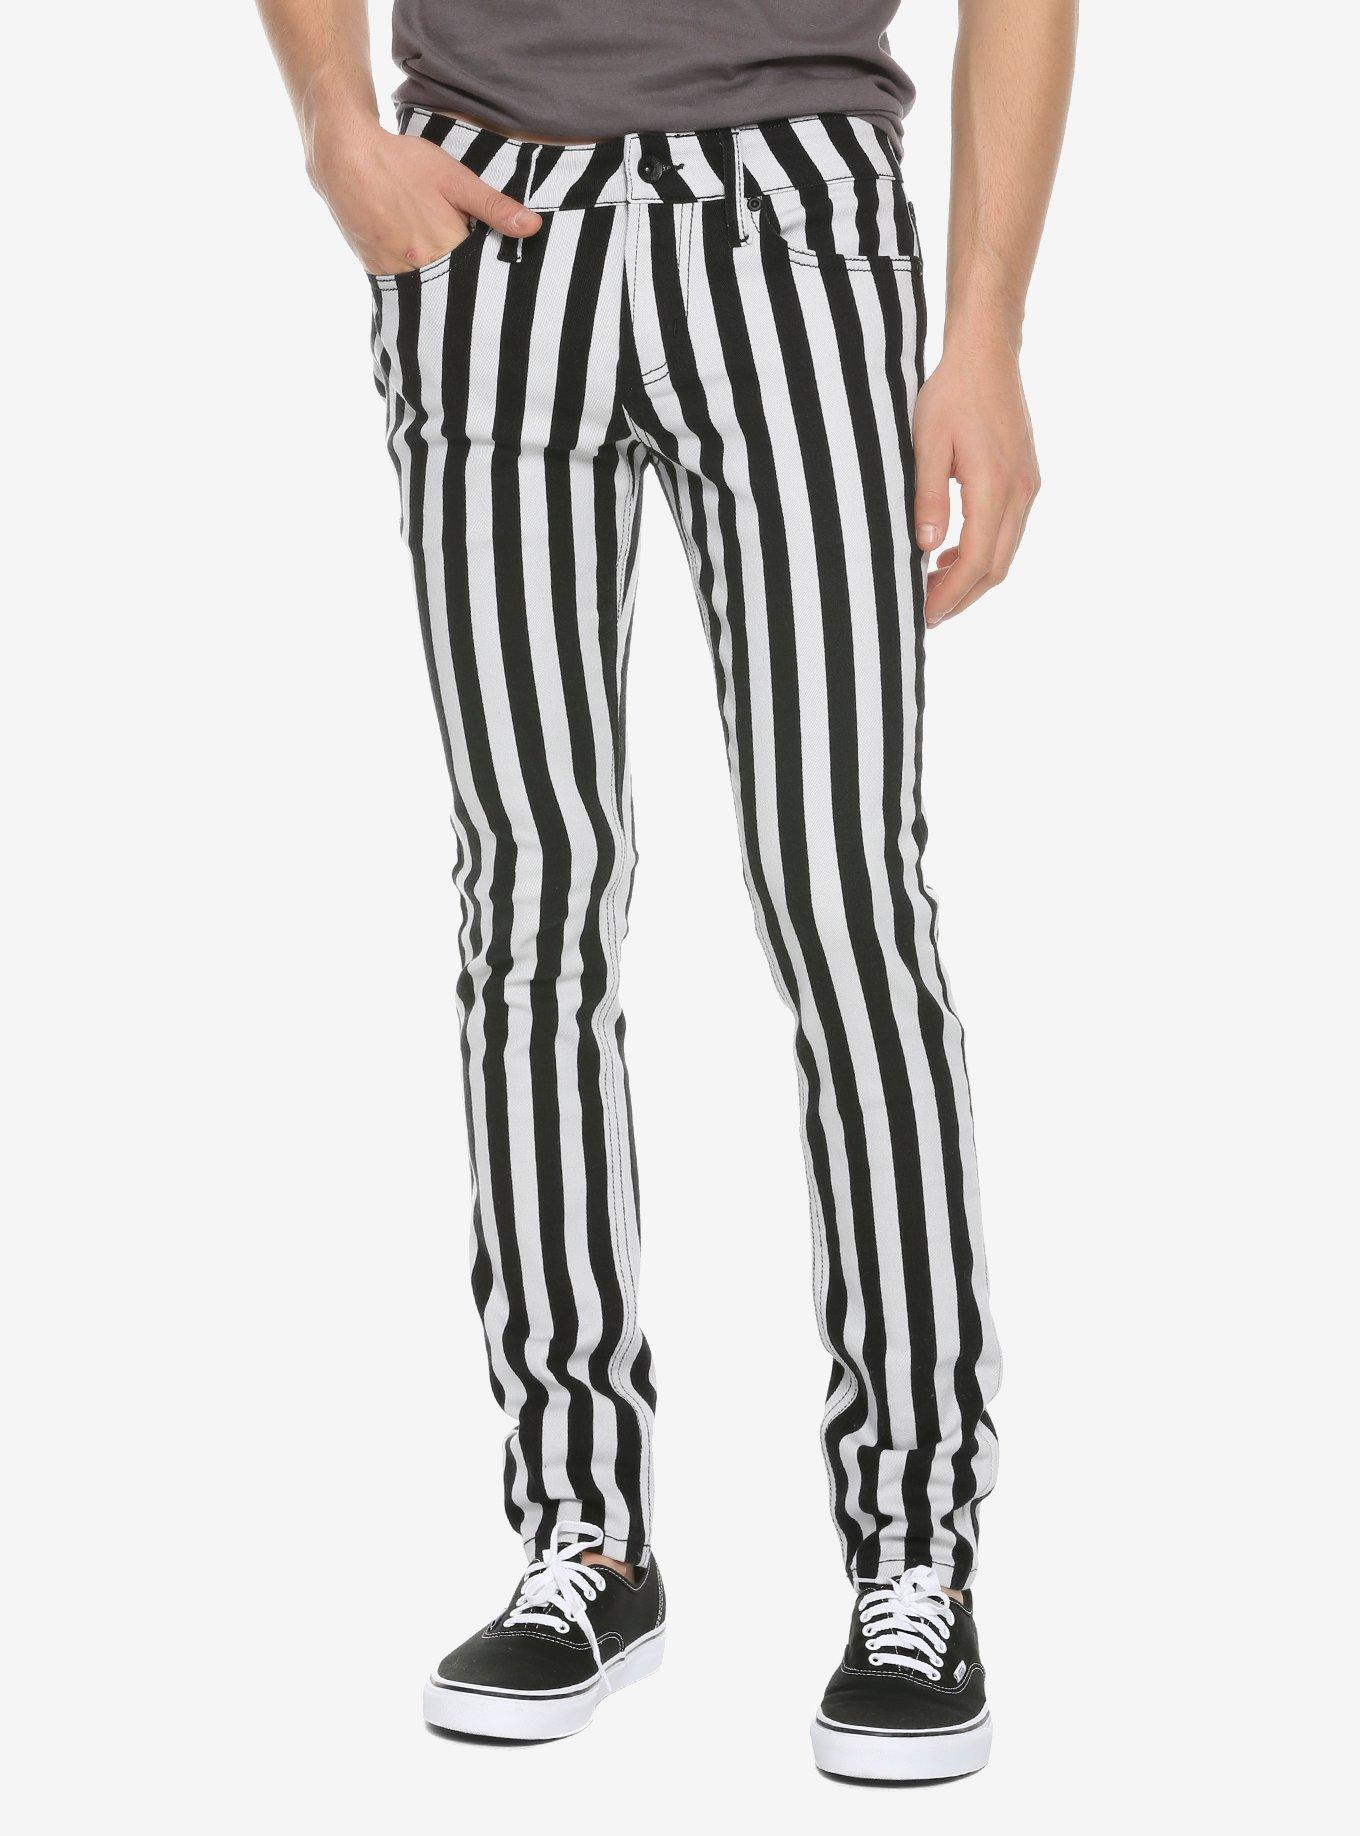 Hue Racer Stripe Denim Leggings-White,Black or Navy with Stripe